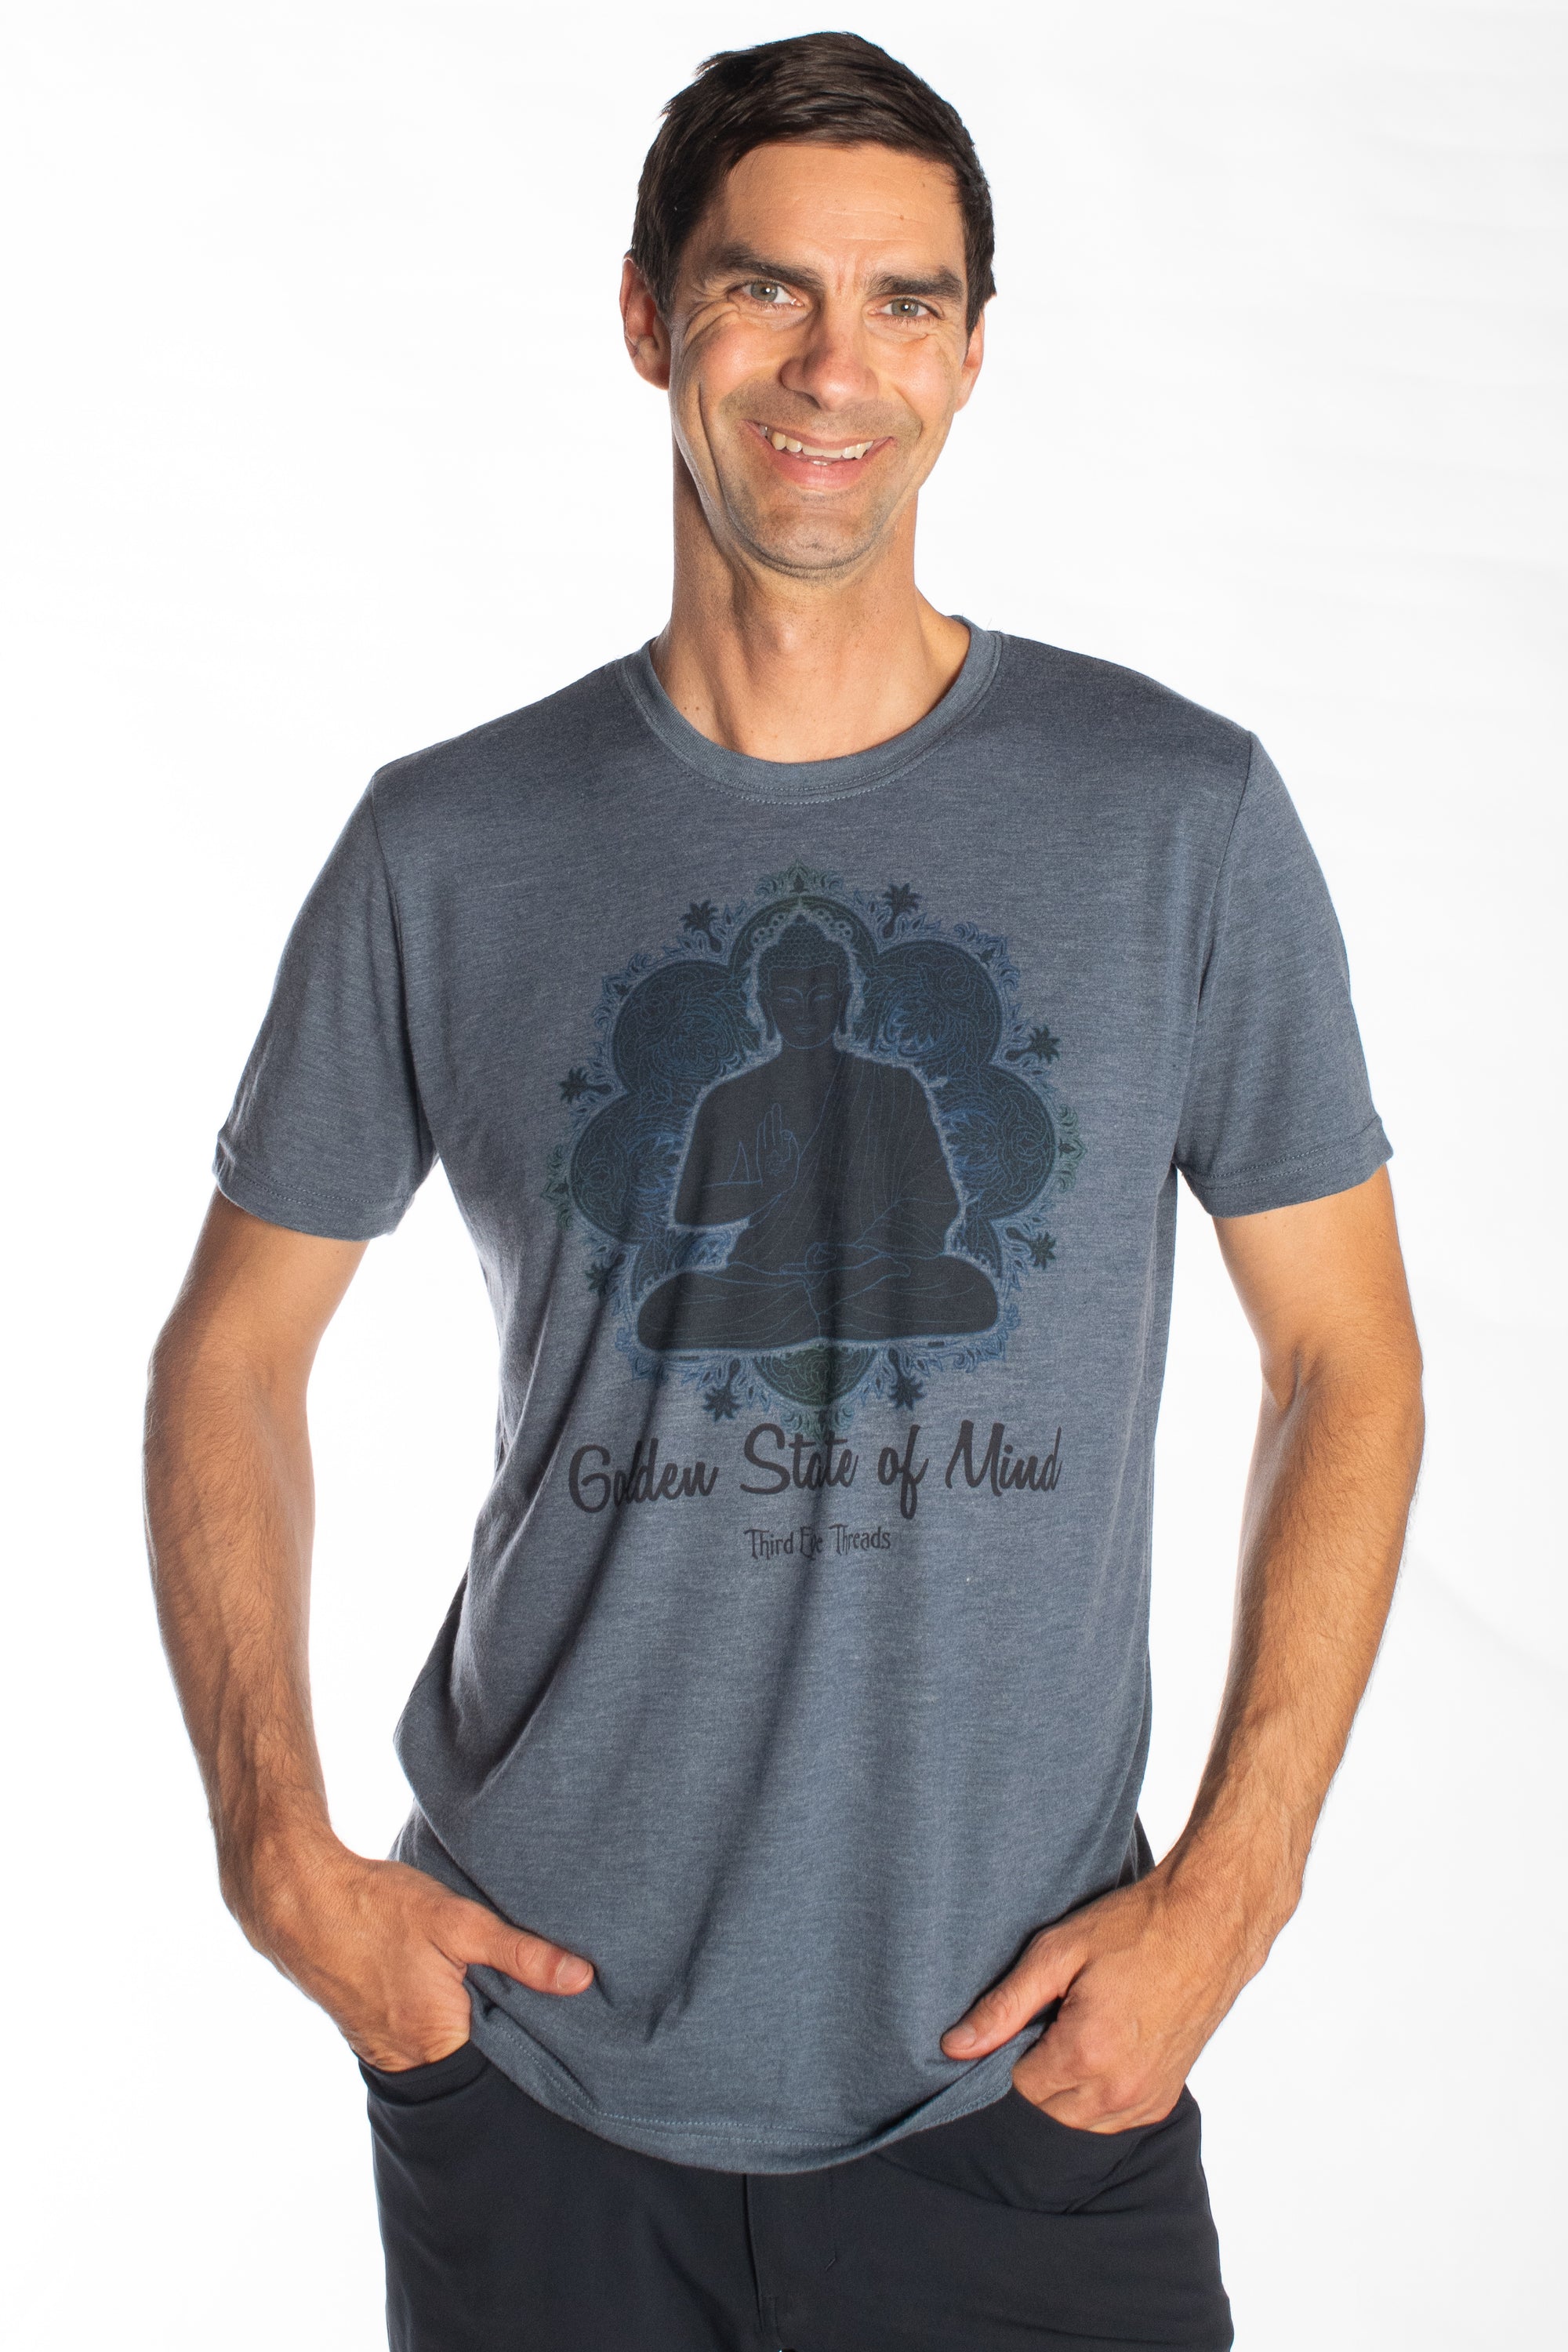 Golden State of Mind on Men's Tri-Blend T-Shirt - Third Eye Threads